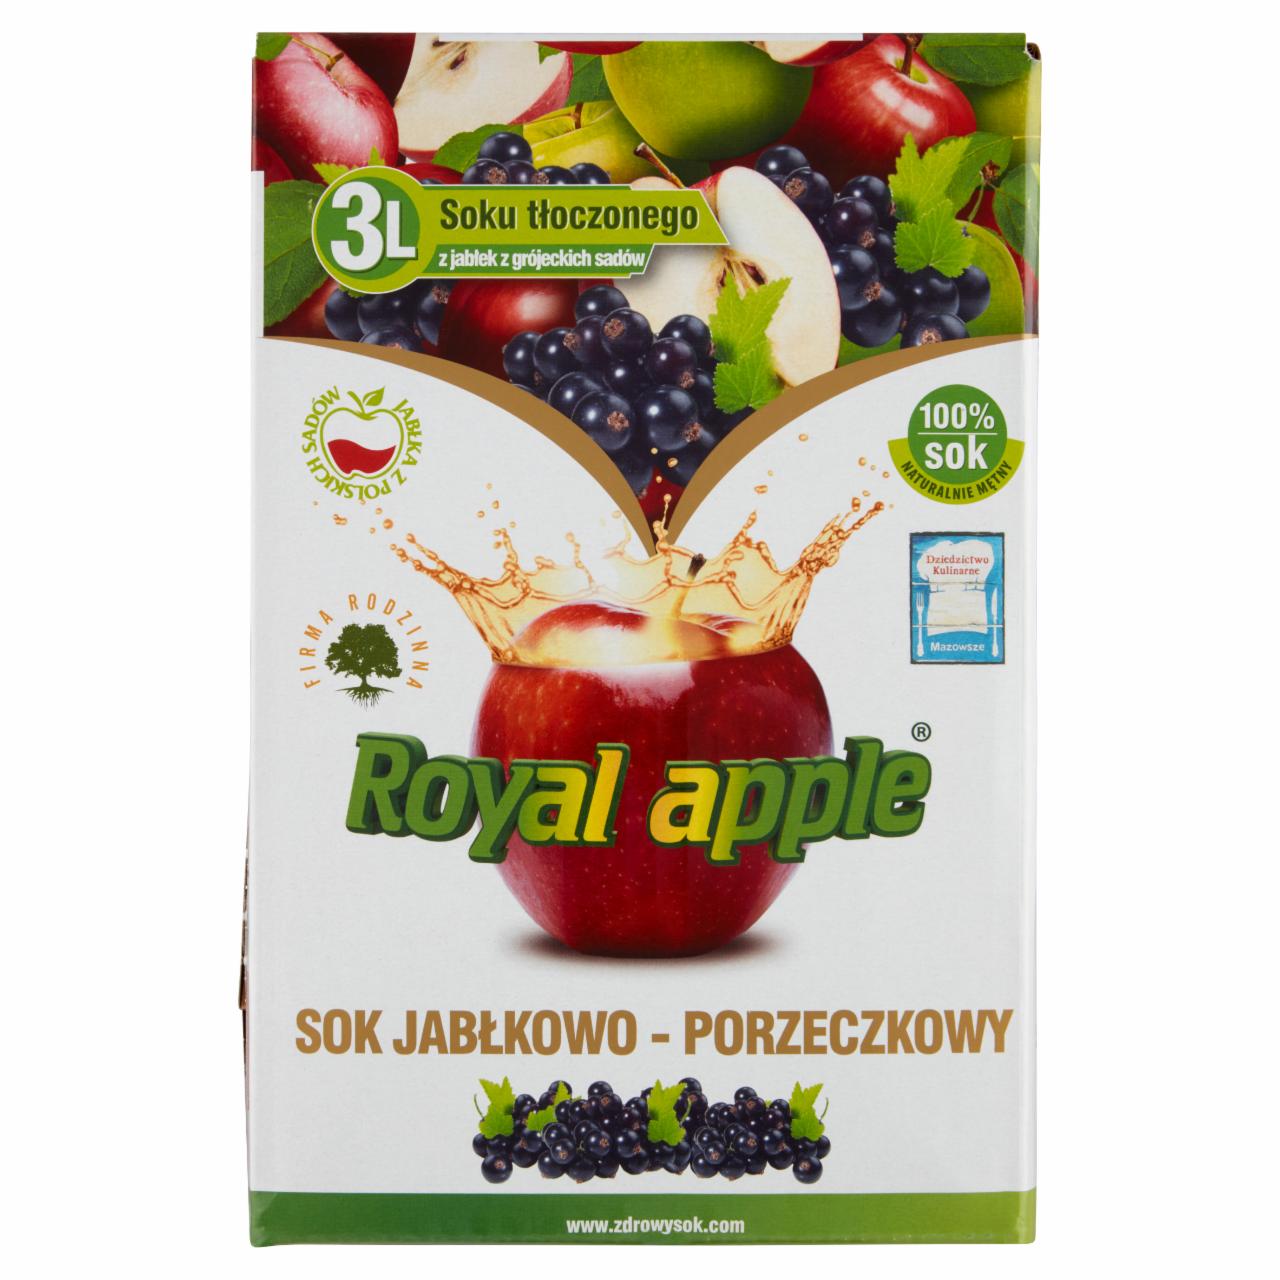 Photo - Royal apple Apple Black Currant Juice 3 L